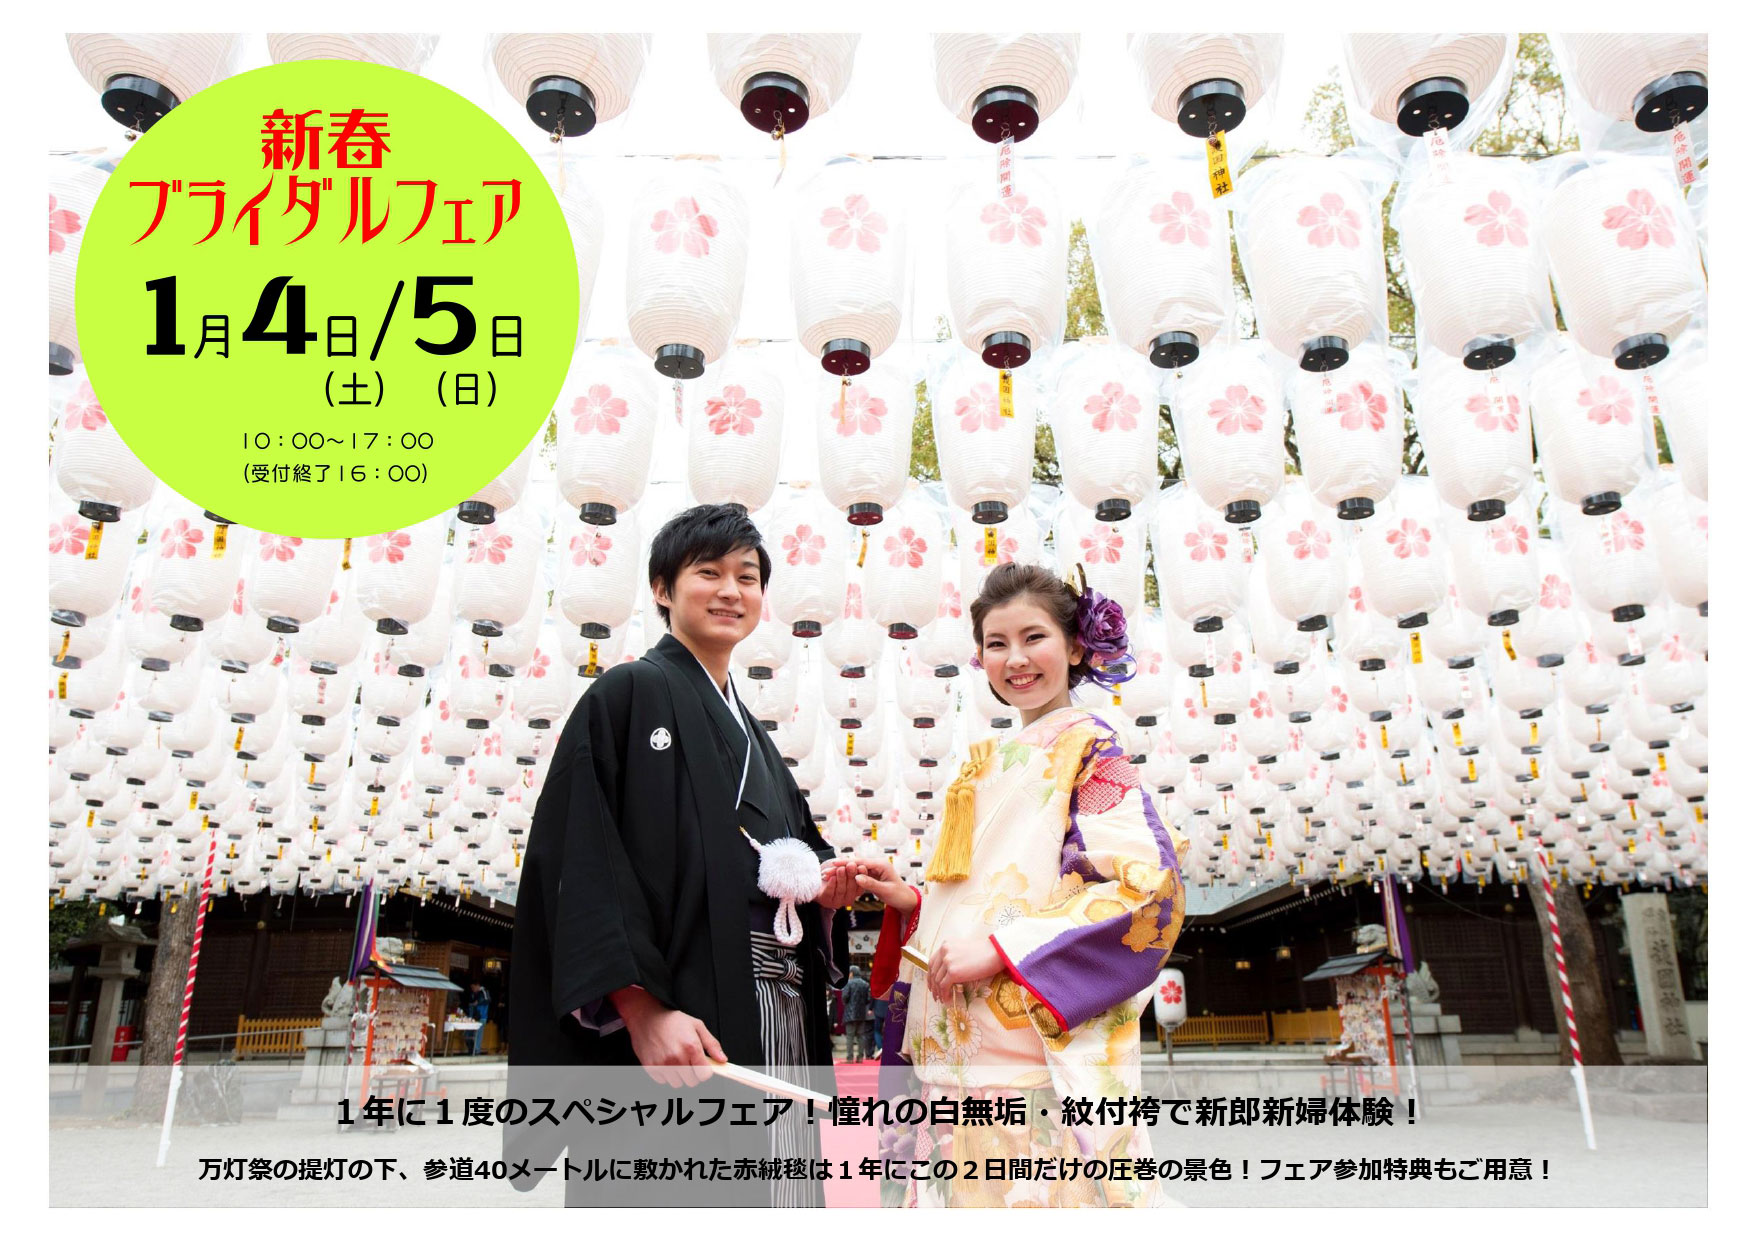 姫路護国神社 ブライダルフェアのお知らせ ウェディングドレスレンタルなら ウェディングベル 姫路 神戸